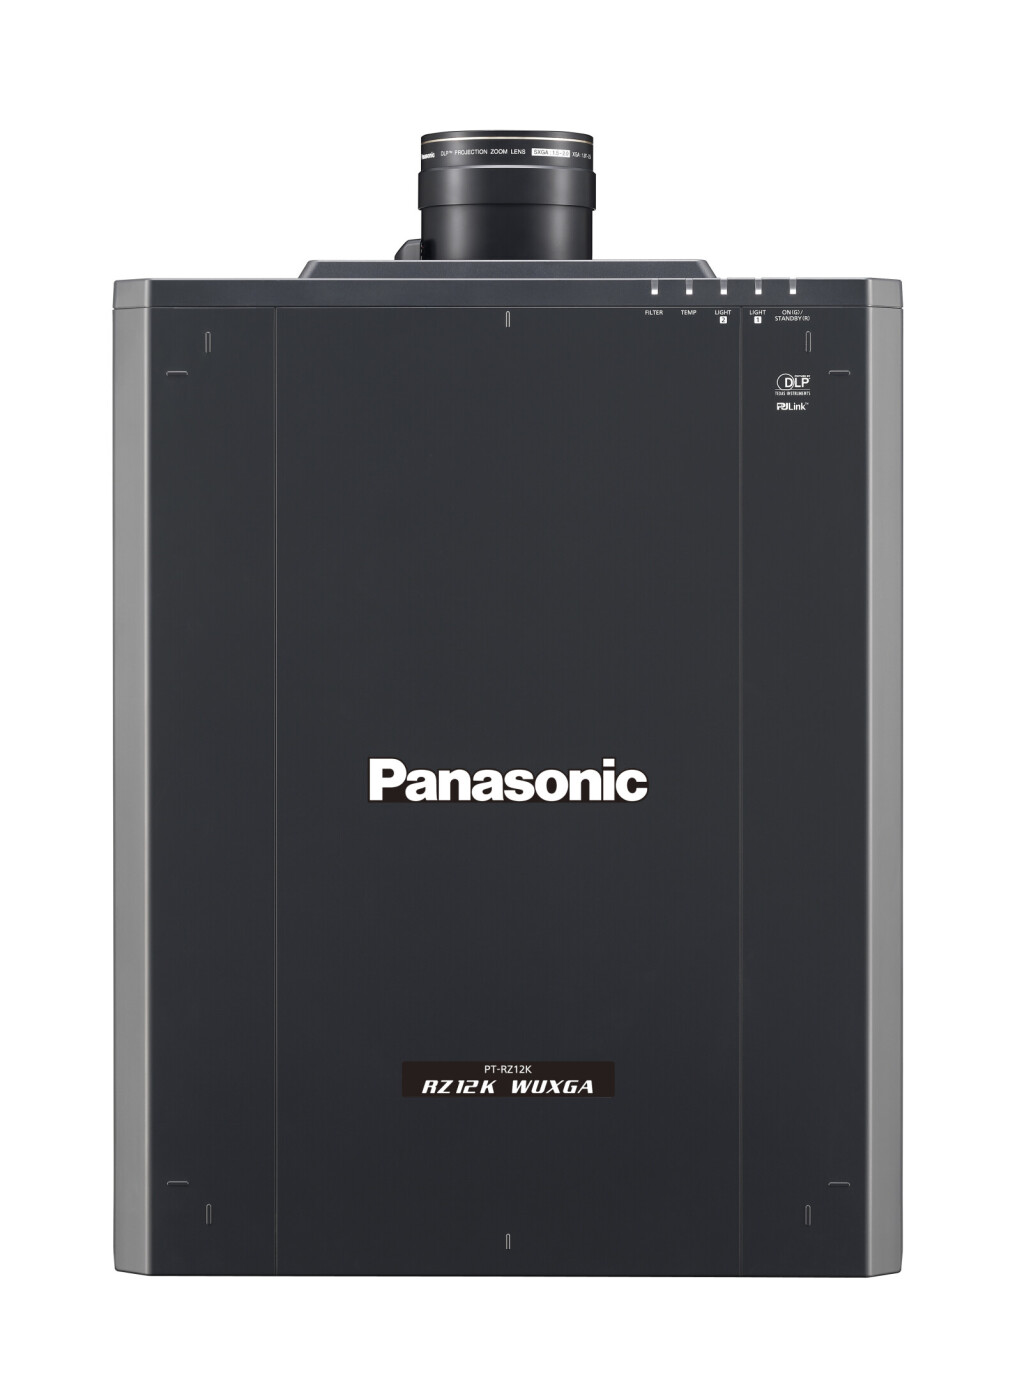 Vorschau: Panasonic PT-RZ12K (ohne Objektiv) Beamer mit 12000 ANSI-Lumen und WUXGA Auflösung